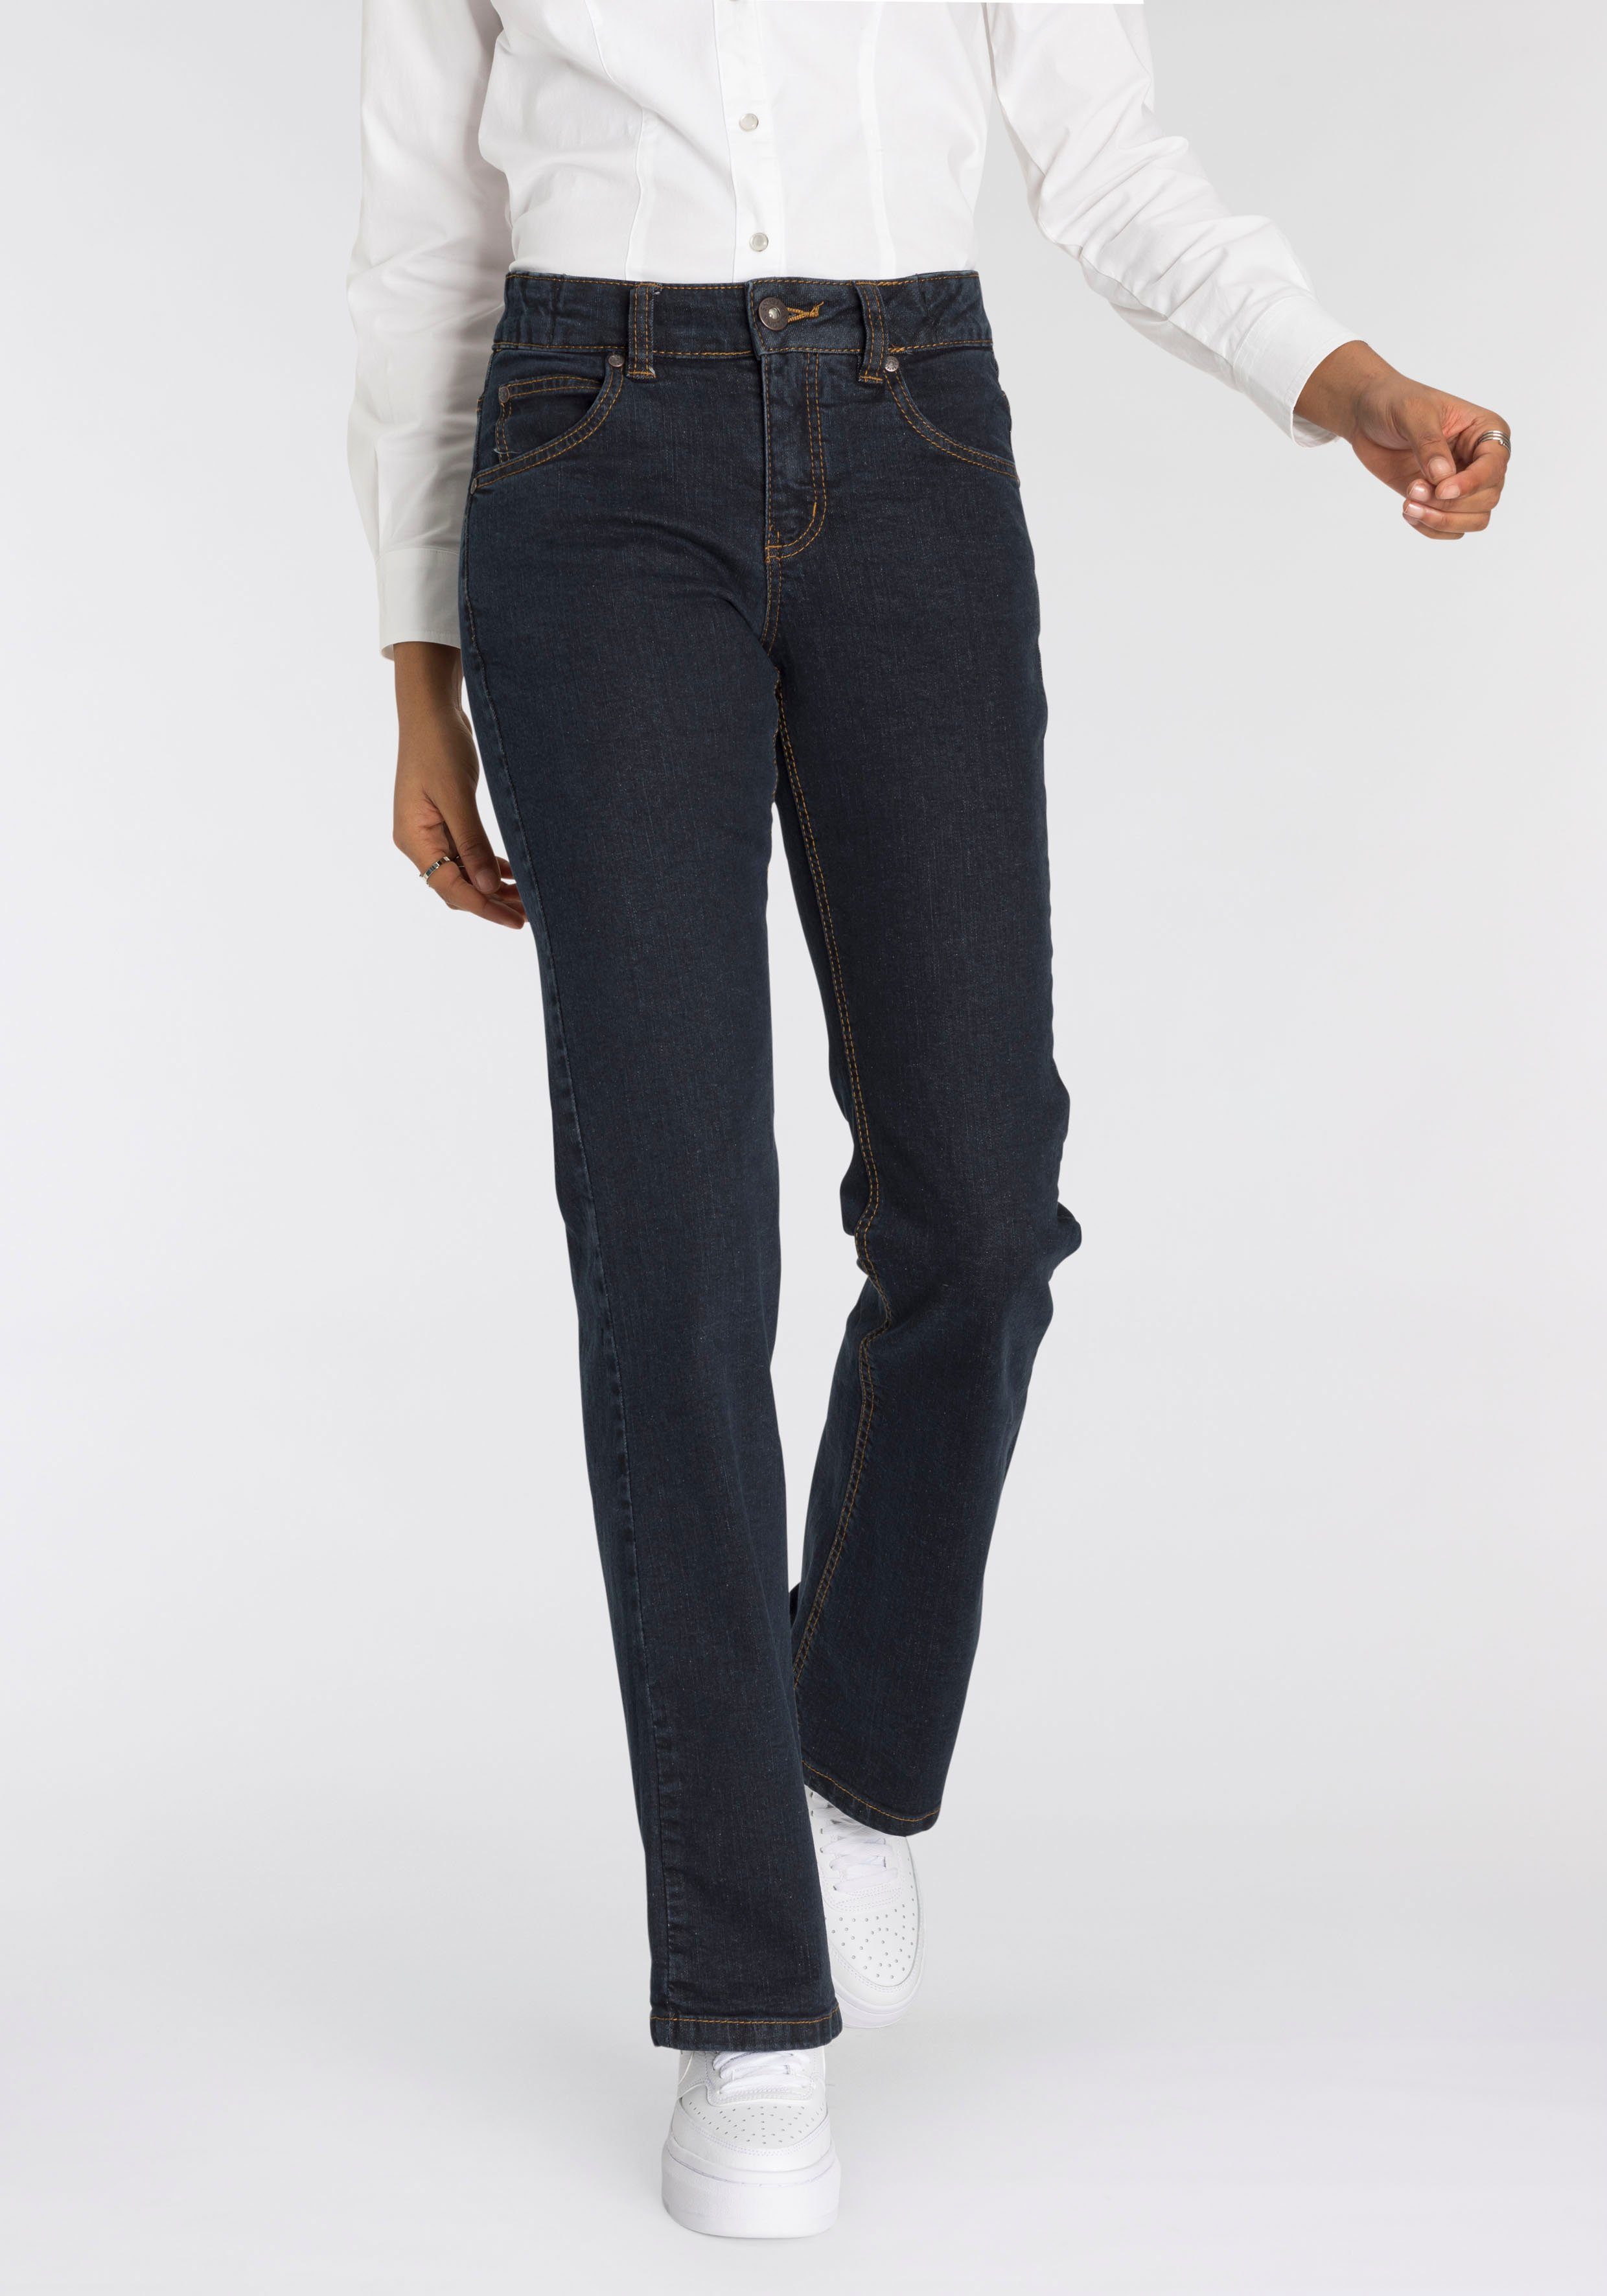 Arizona Bootcut-Jeans Waist mit Bund Gummizugeinsatz seitlichem High